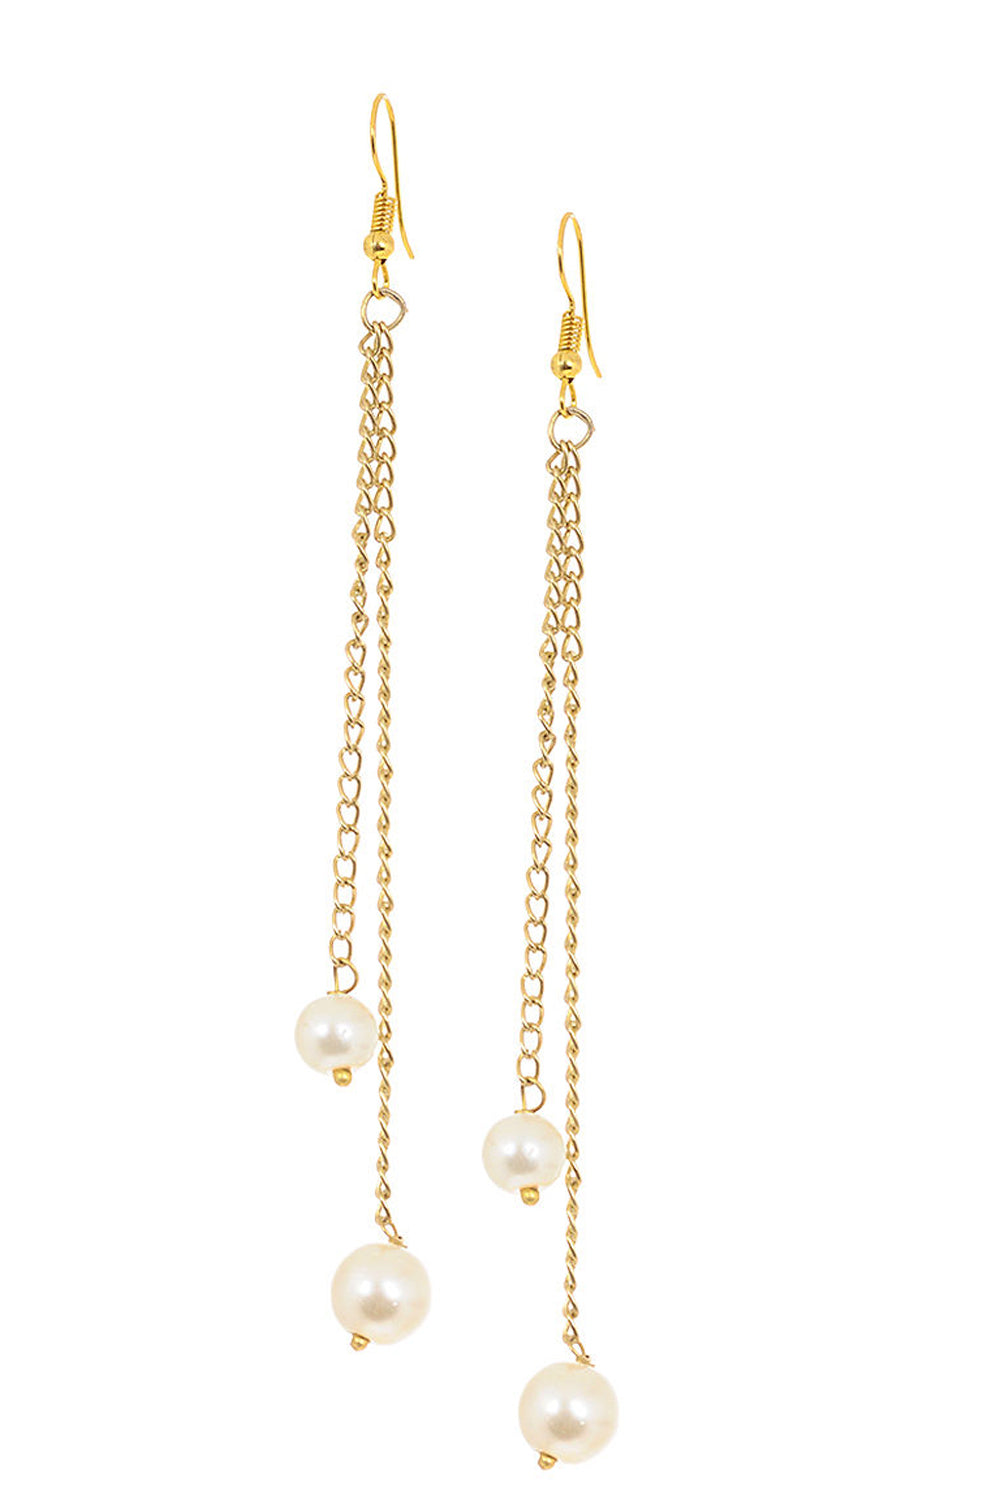 Women's Alloy Large Dangle Earrings in Gold